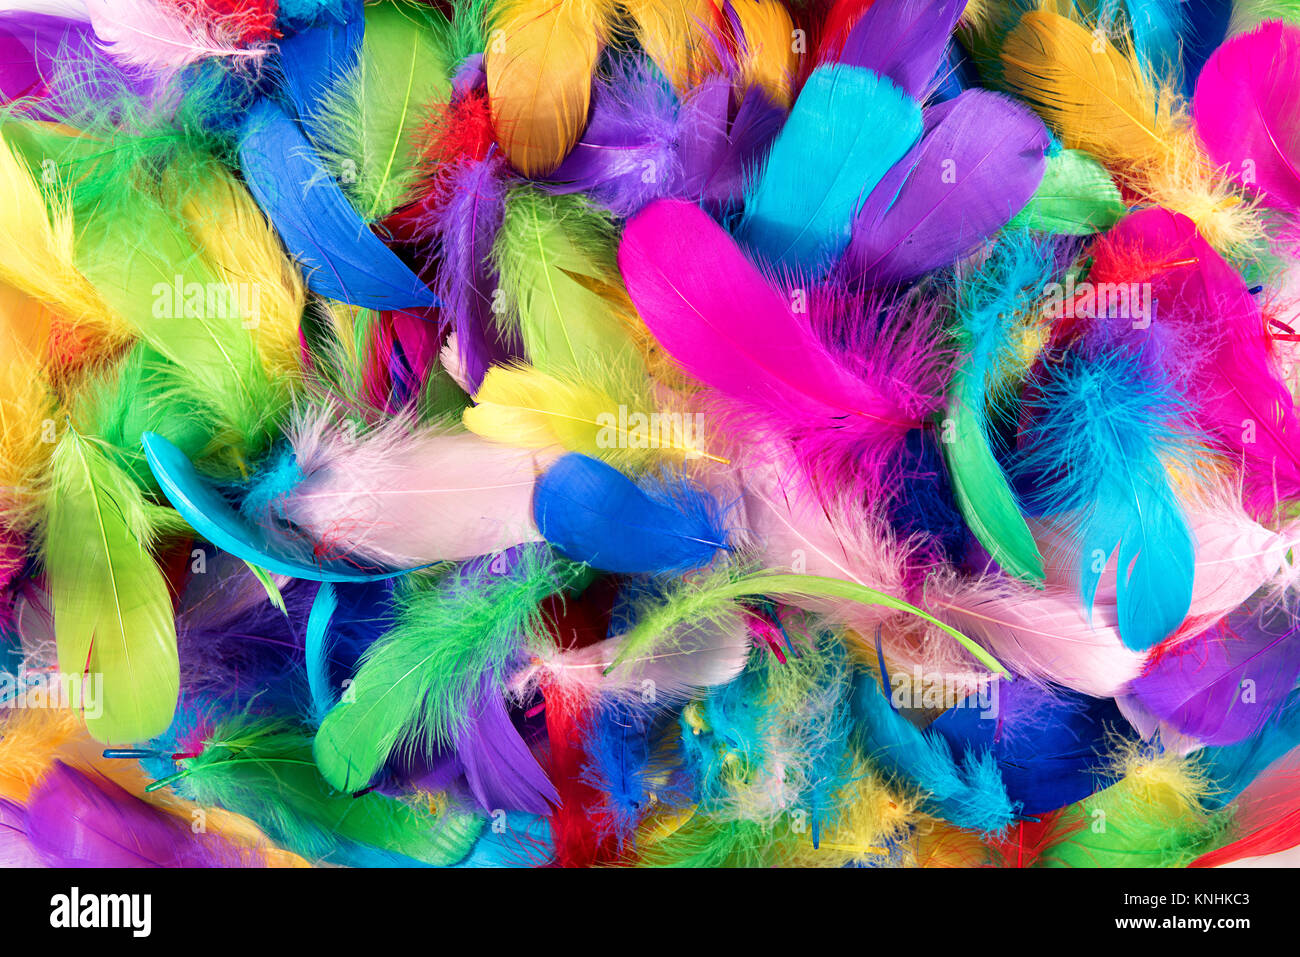 Piume colorate immagini e fotografie stock ad alta risoluzione - Alamy